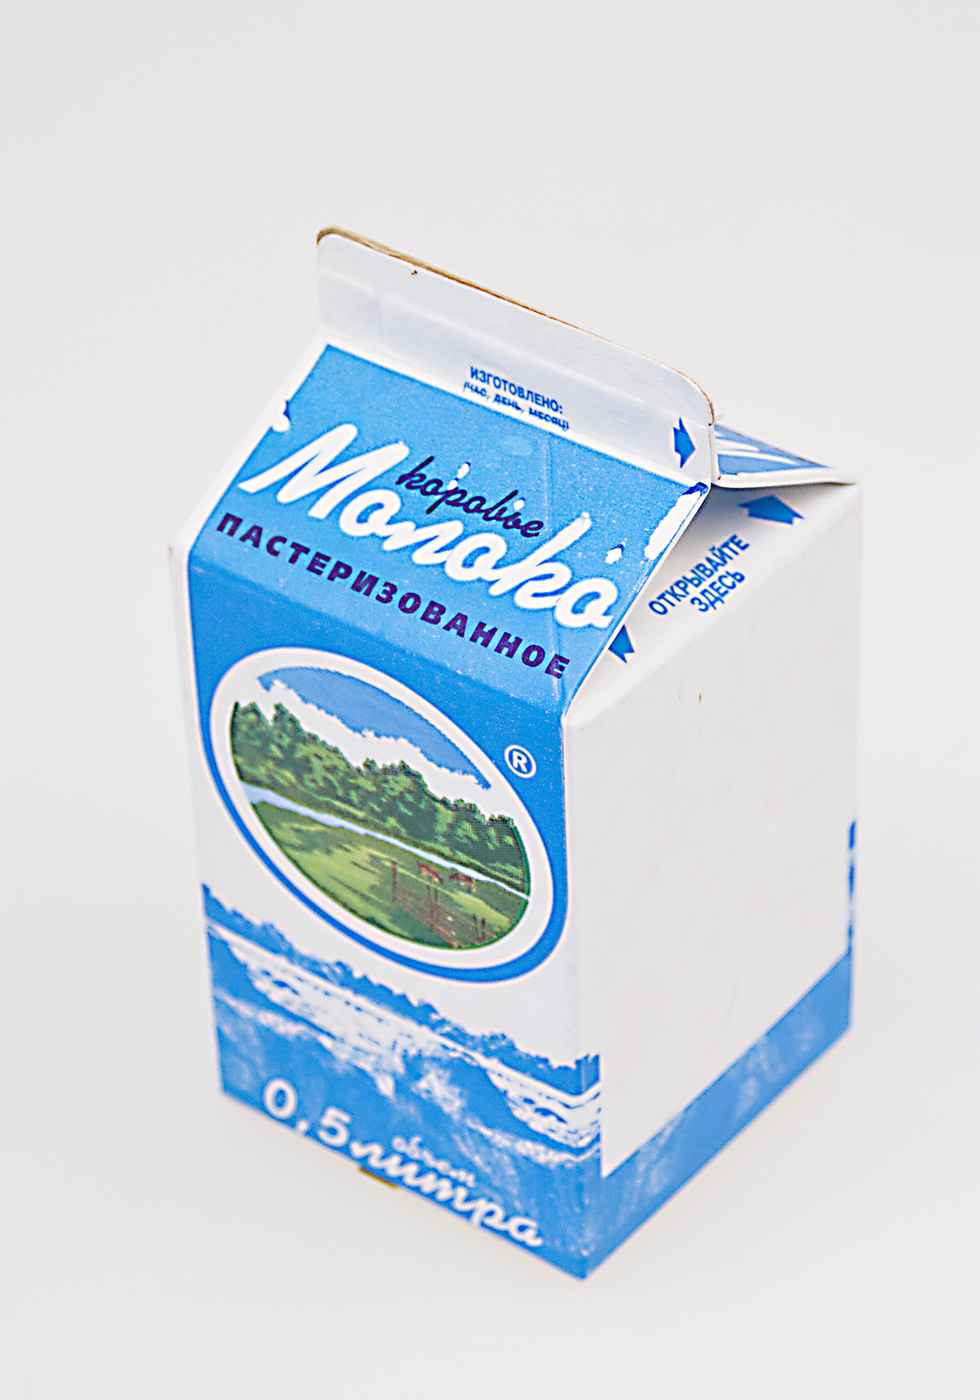 Упаковочная коробка для продукции Советского молокозавода. Начало ХХI